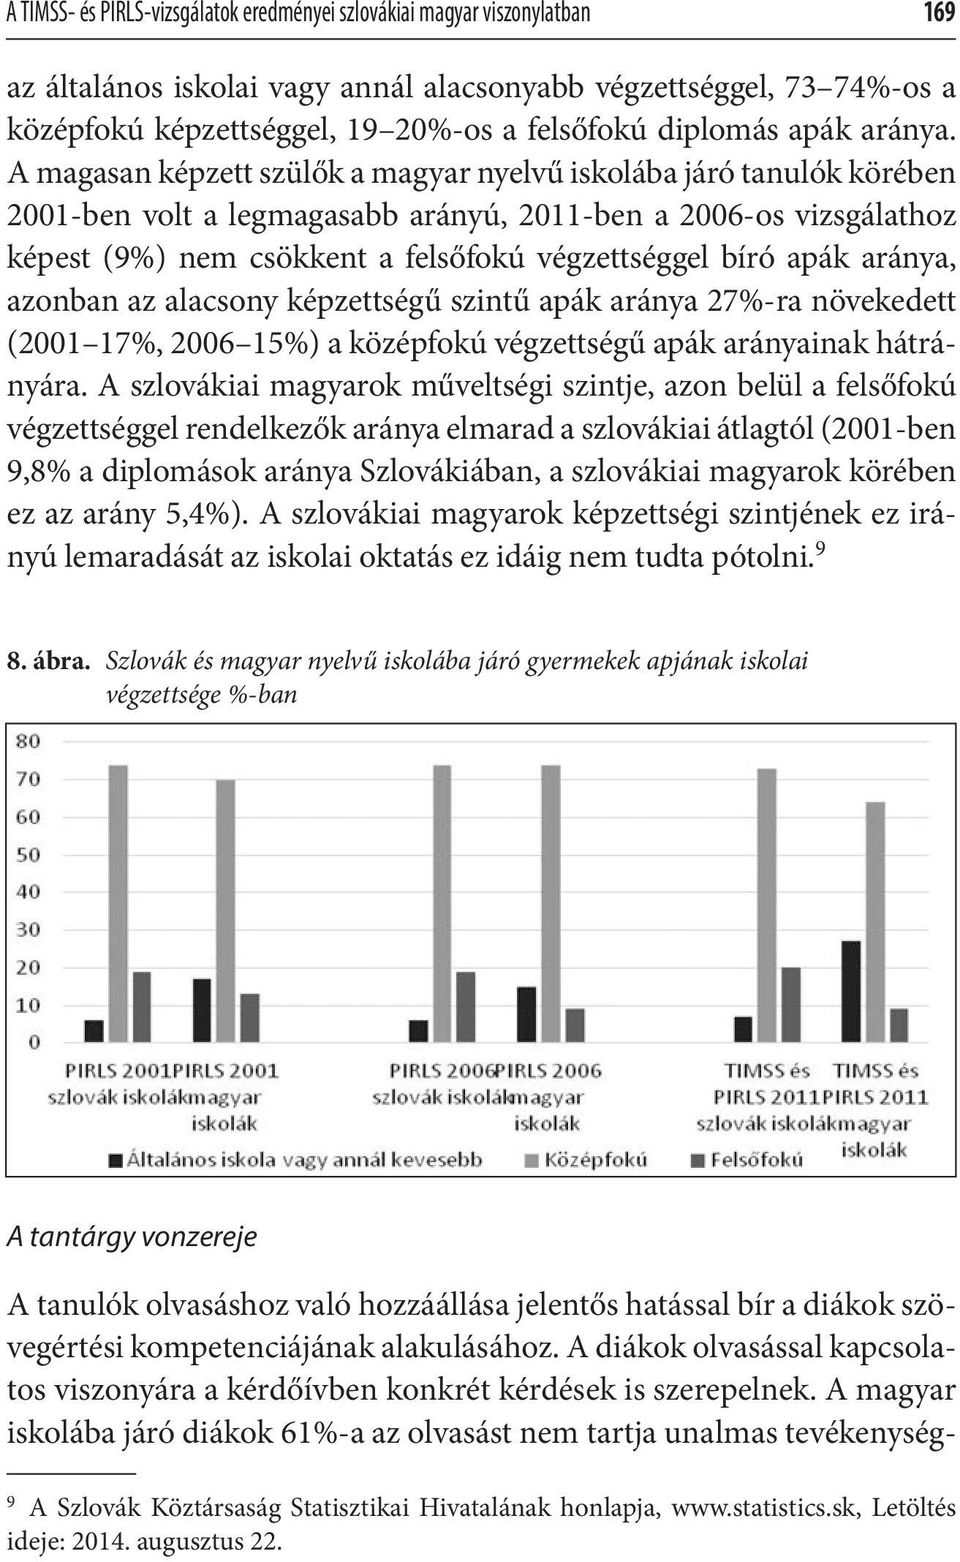 A magasan képzett szülők a magyar nyelvű iskolába járó tanulók körében 2001-ben volt a legmagasabb arányú, 2011-ben a 2006-os vizsgálathoz képest (9%) nem csökkent a felsőfokú végzettséggel bíró apák